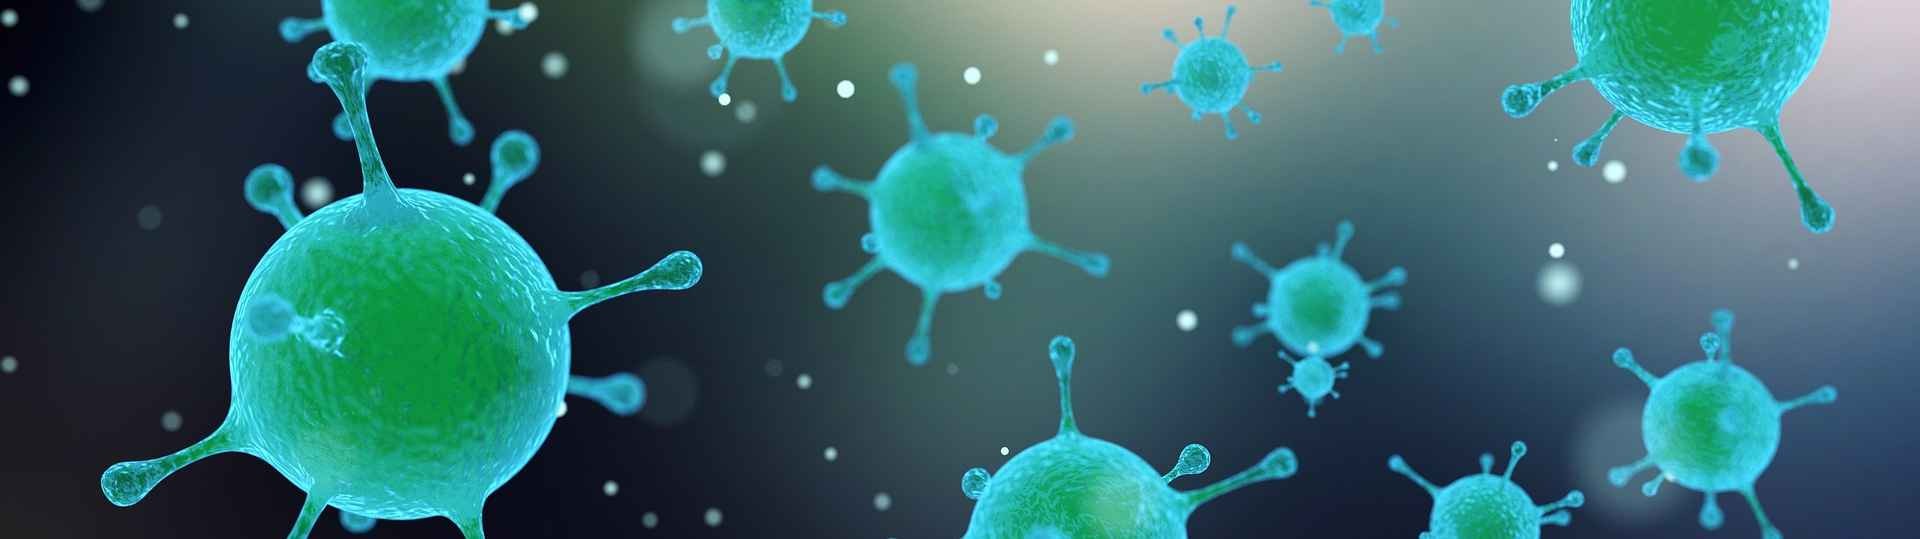 El virus del herpes, un nuevo guerrero para combatir la batalla del cáncer